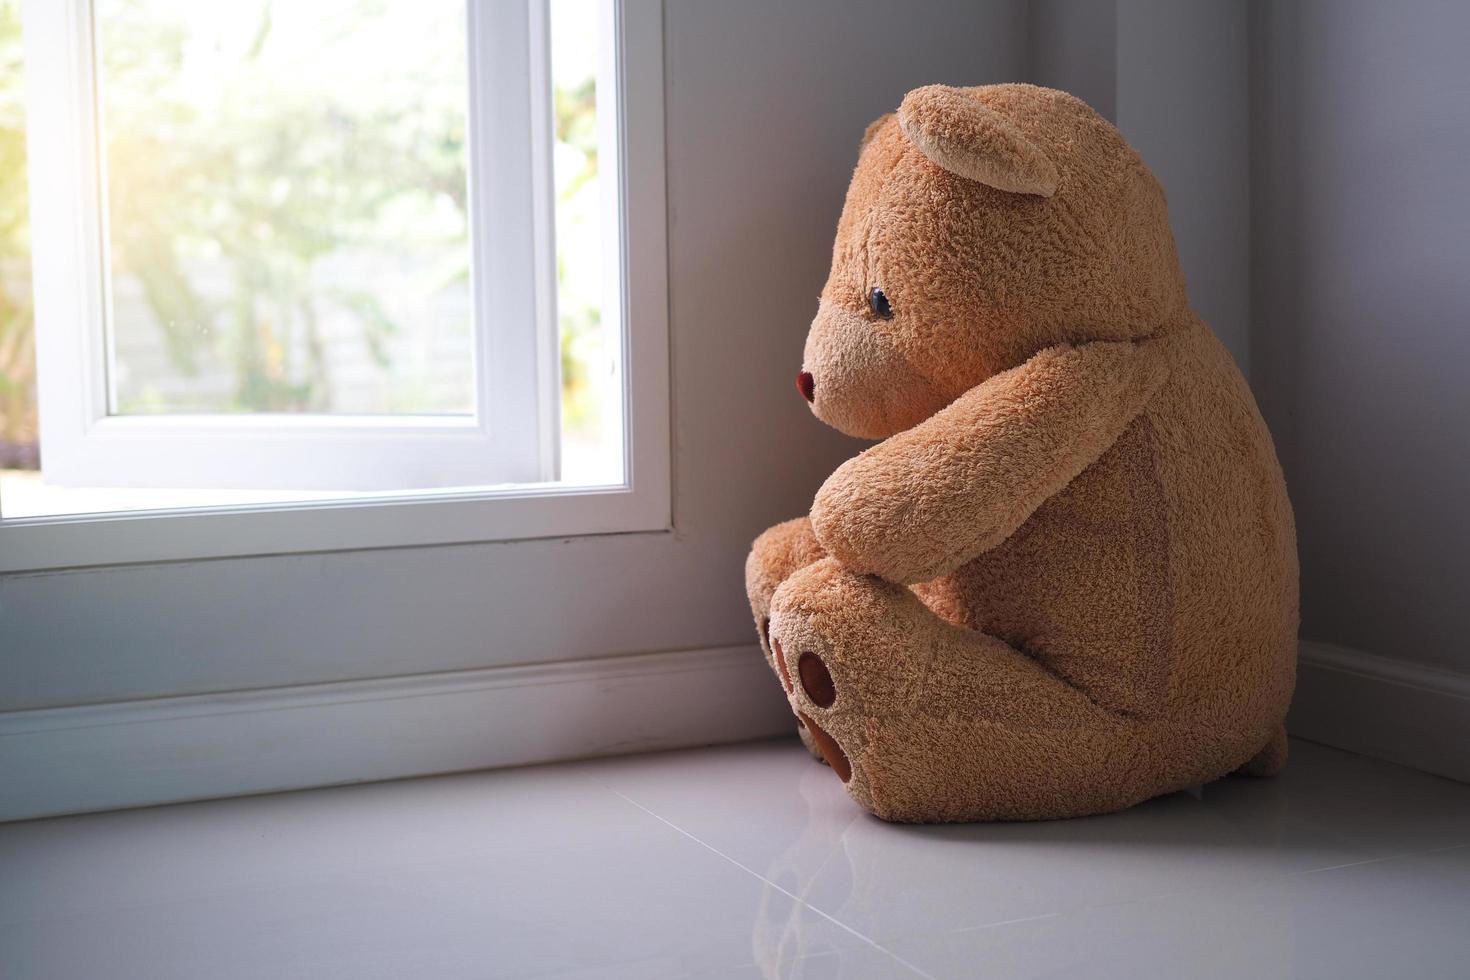 concepto de trastorno depresivo mayor mdd. duelo de los niños. oso de peluche sentado mirando solo la ventana de la casa. parece alguien que está triste, decepcionado, deprimido foto